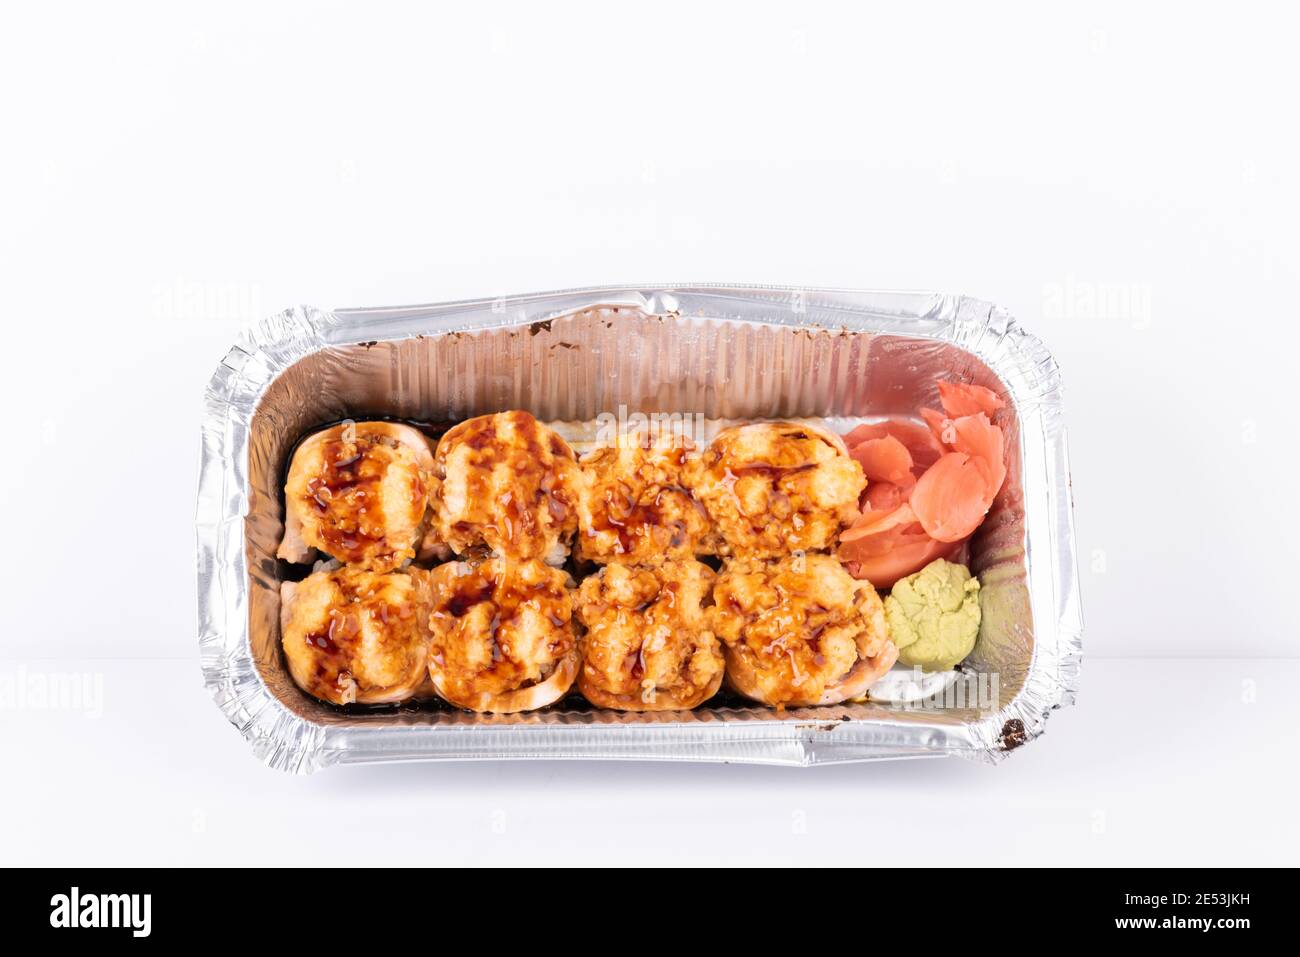 Heiße leckere Sushi-Rolle mit gegrilltem Käse, Mayonnaise Verpackung in  Folie Aluminium Box Behälter für japanische Lebensmittel Lieferung,  Flugzeug oder Takeaway se Stockfotografie - Alamy